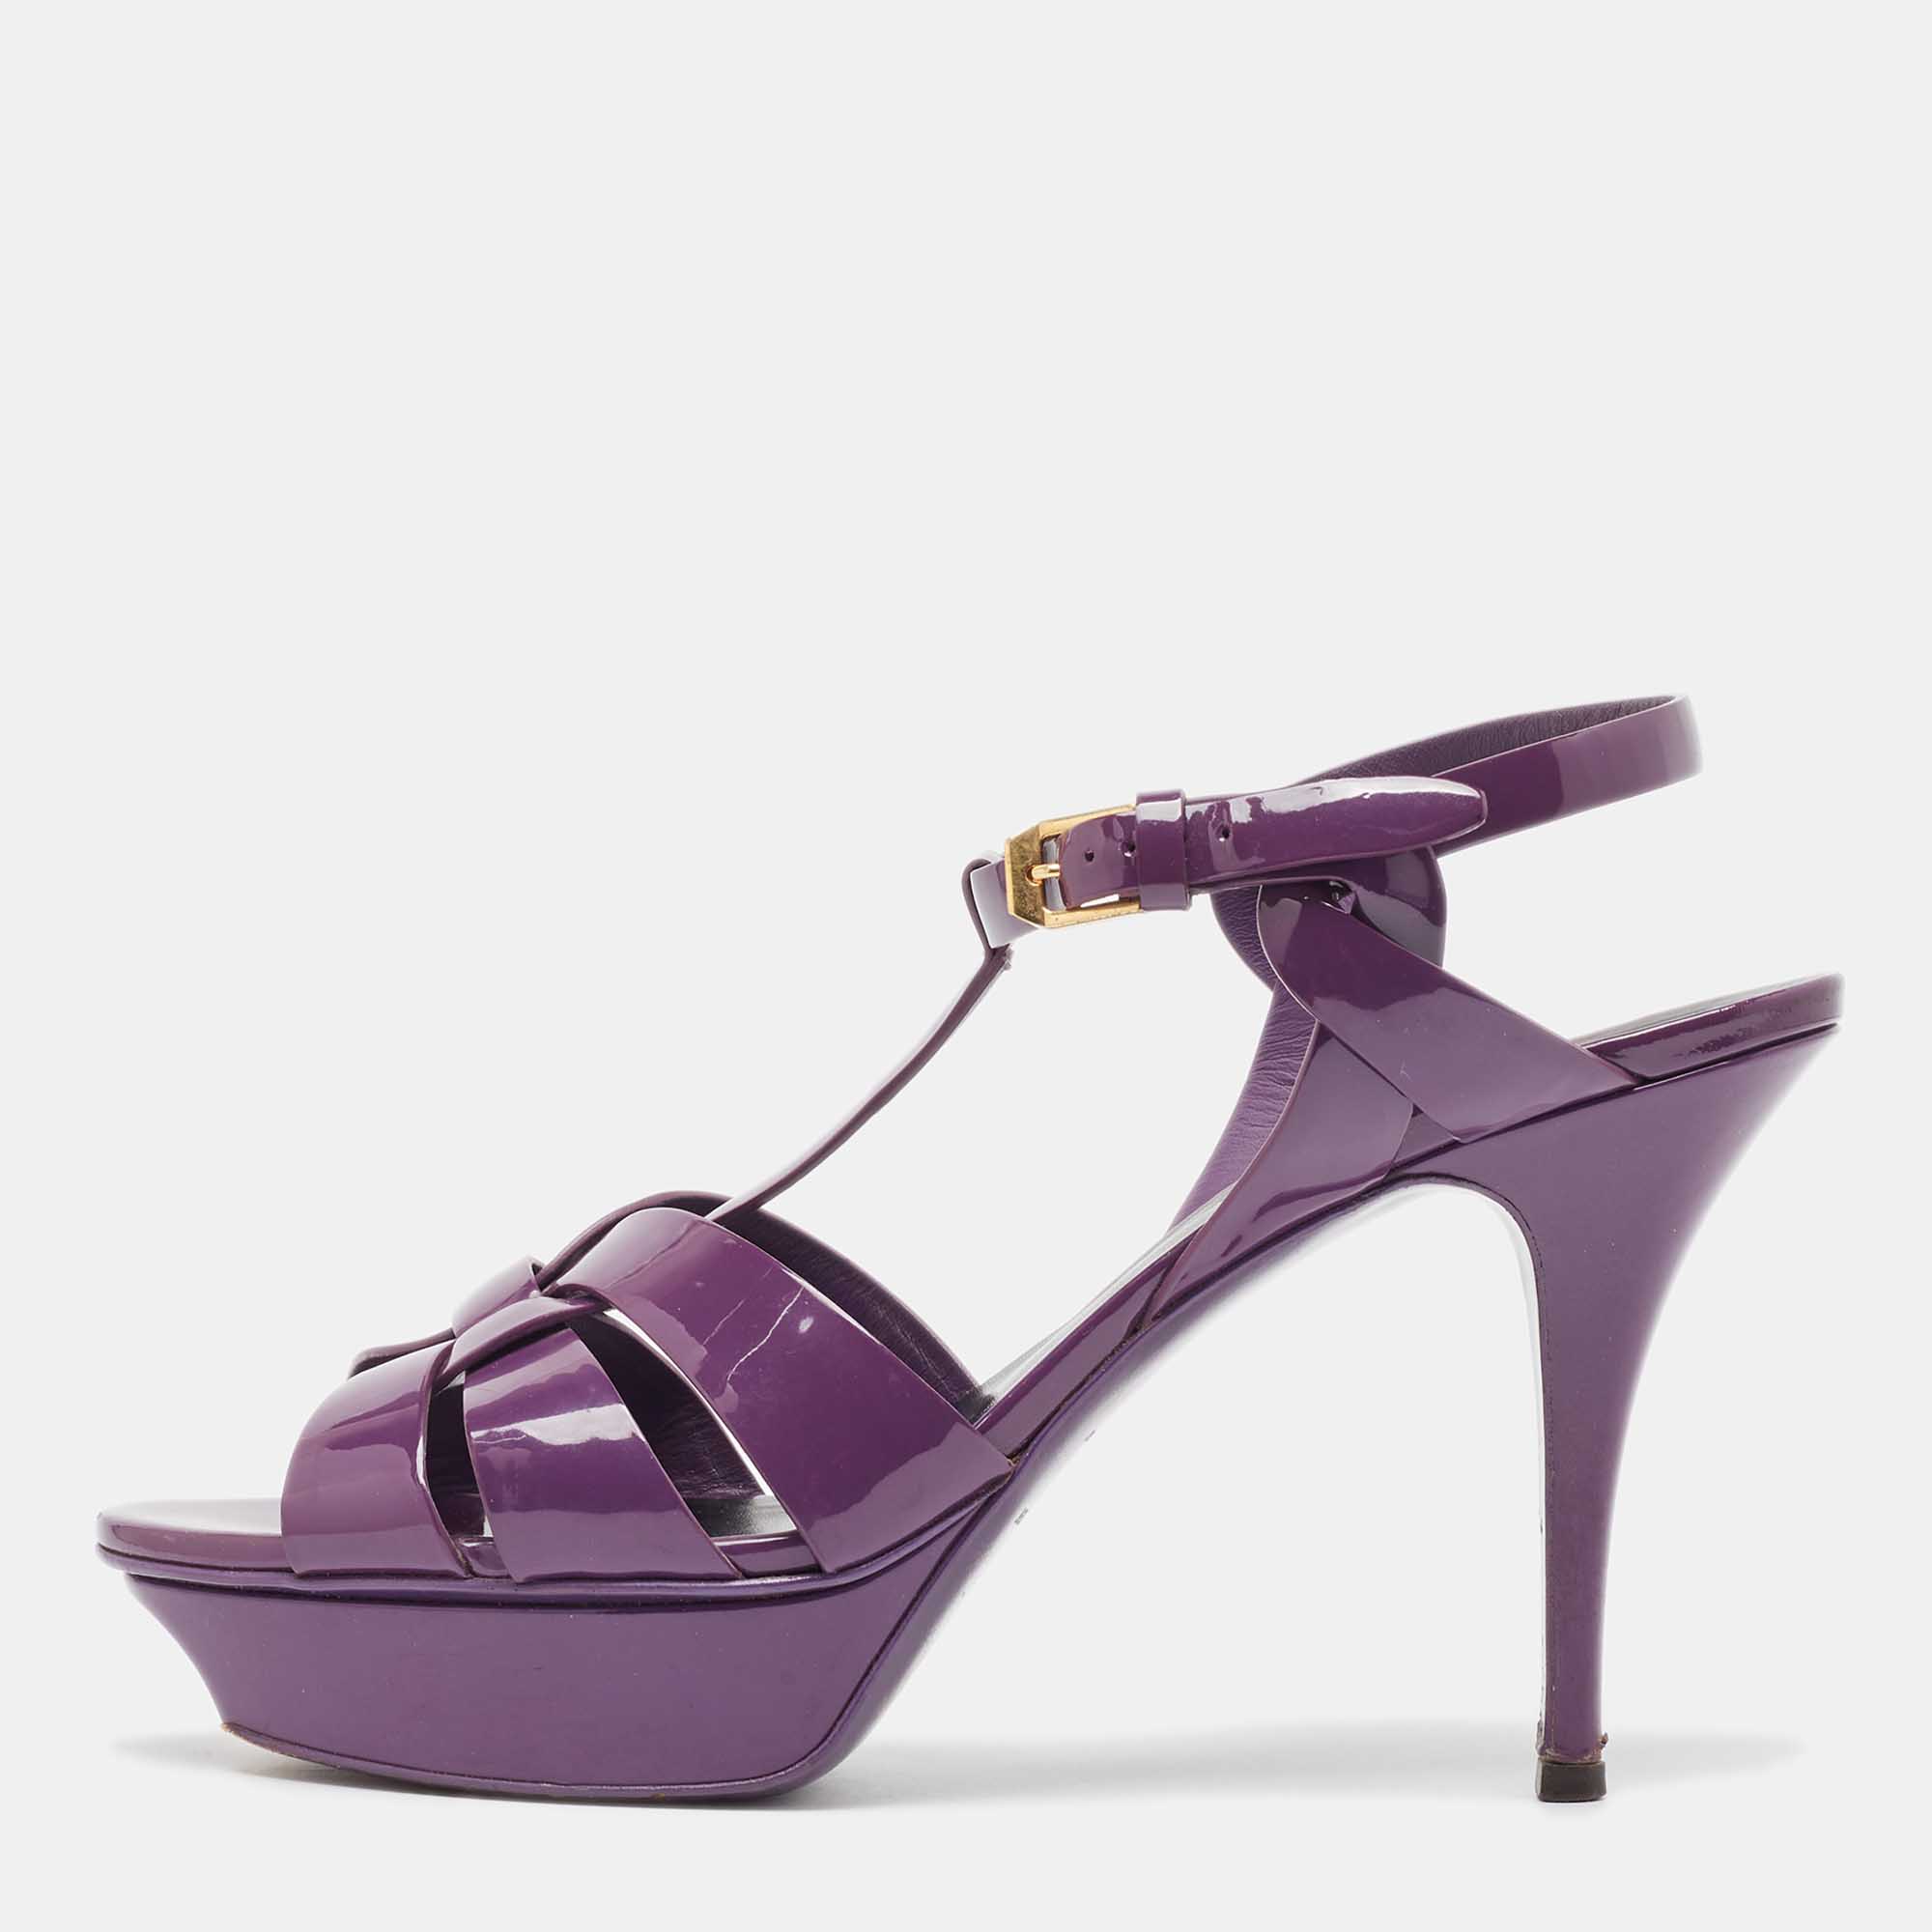 Saint Laurent Purple Patent Leather Tribute Sandals Size 41